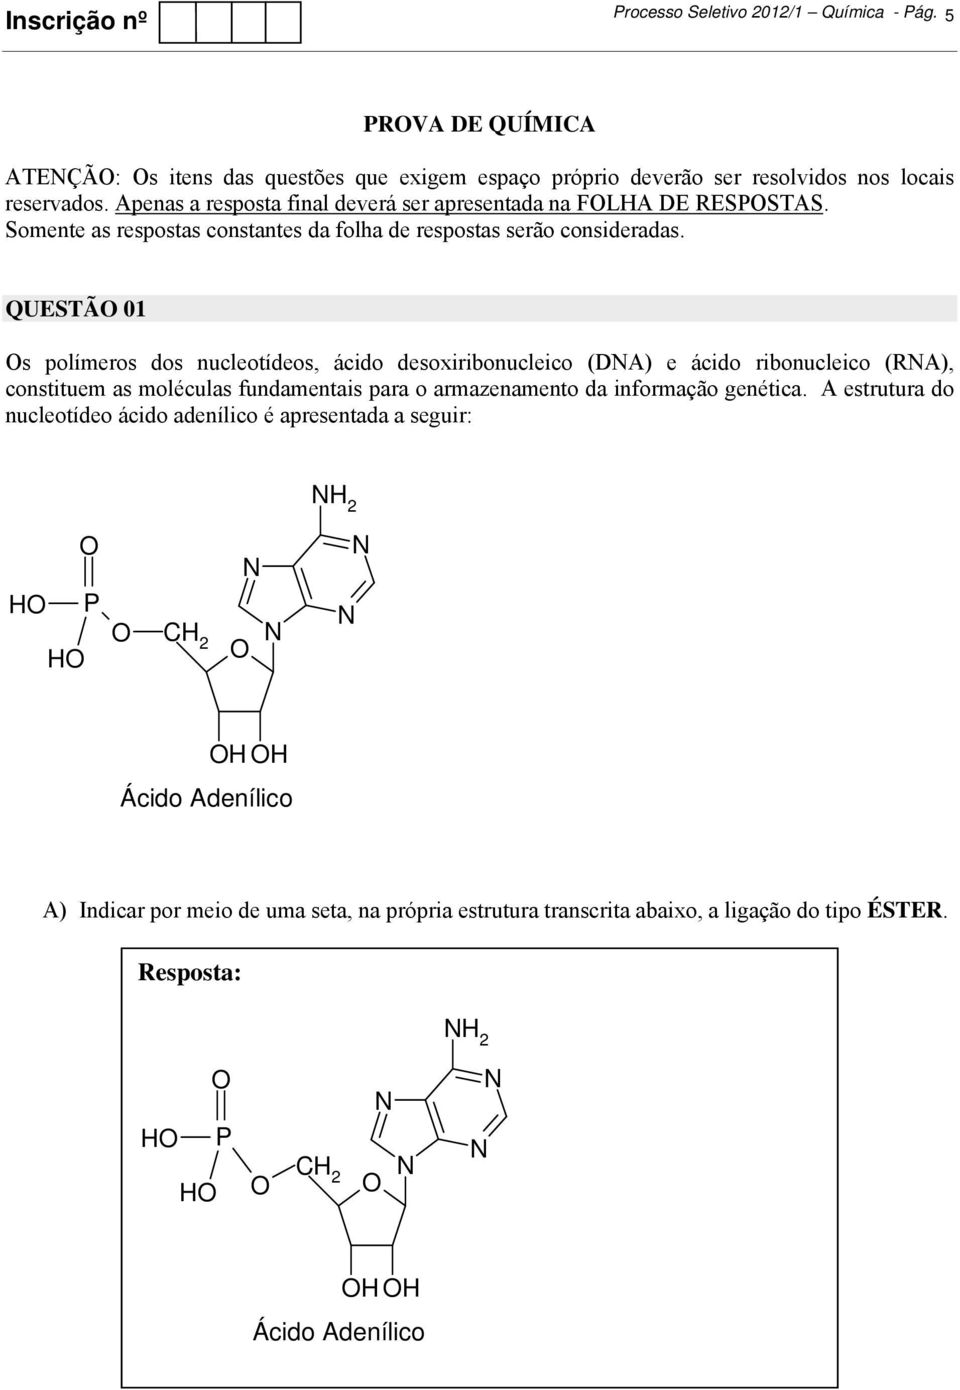 QUESTÃ 01 s polímeros dos nucleotídeos, ácido desoxiribonucleico (DA) e ácido ribonucleico (RA), constituem as moléculas fundamentais para o armazenamento da